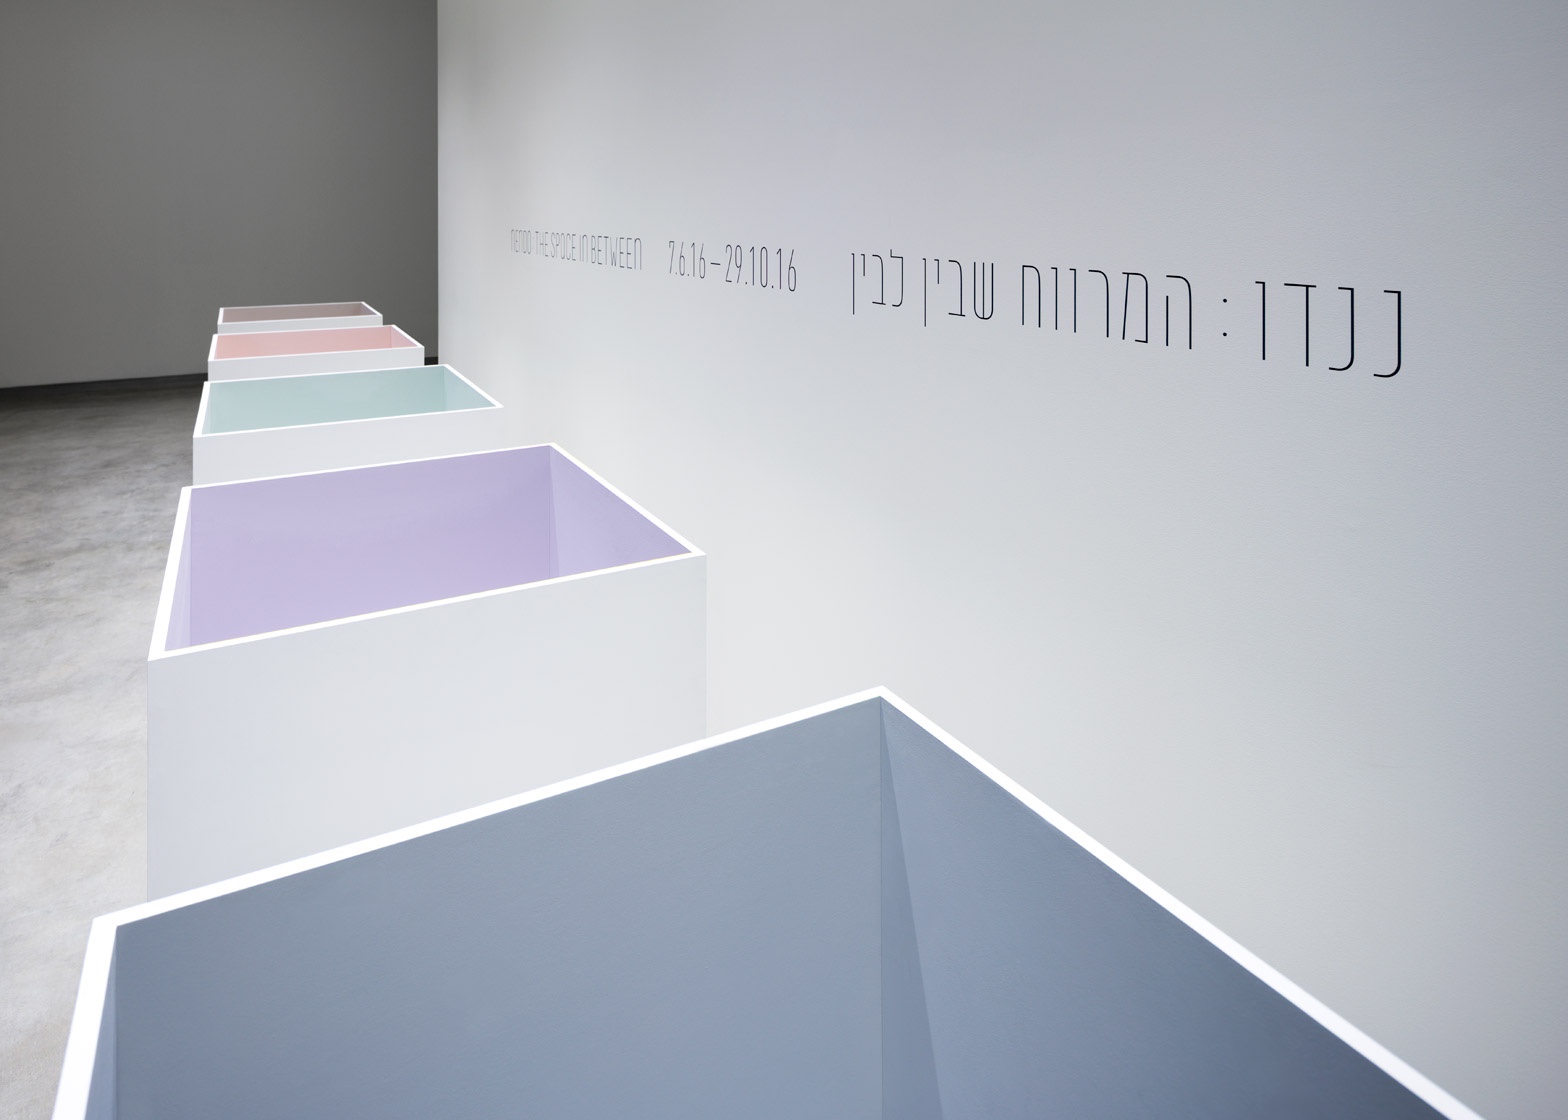 nendo retrospective at the Design Museum Holon